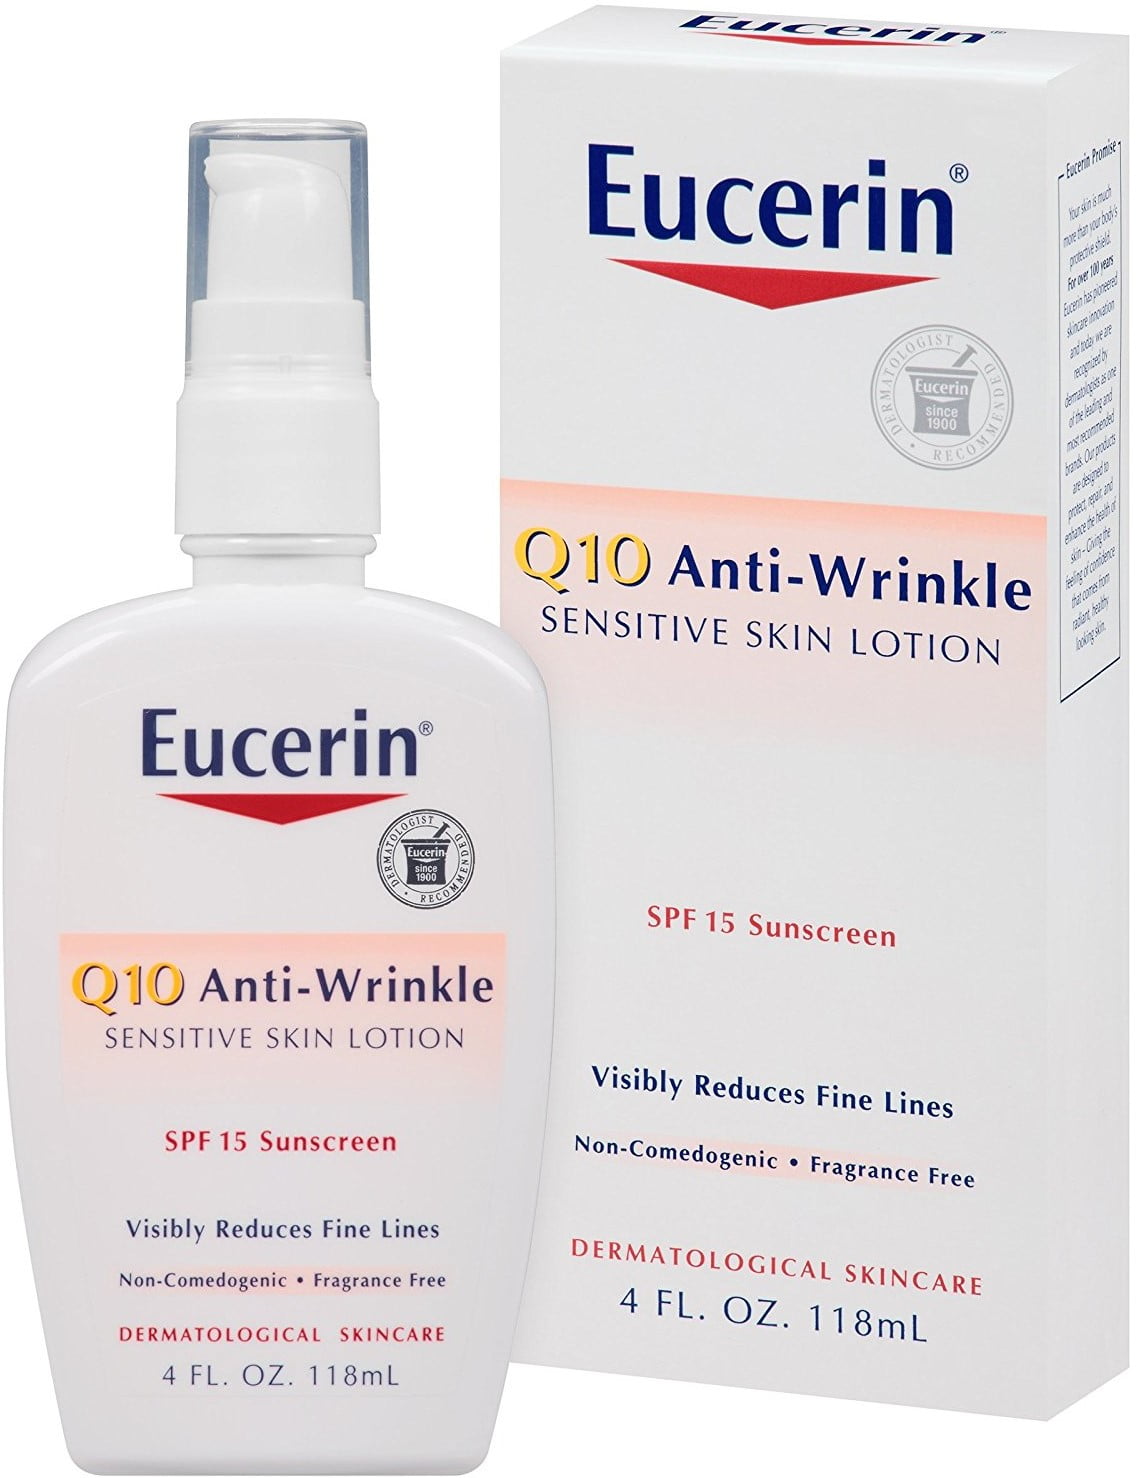 eucerin anti wrinkle face lotion legjobb anti aging kiegészítők a márkákon